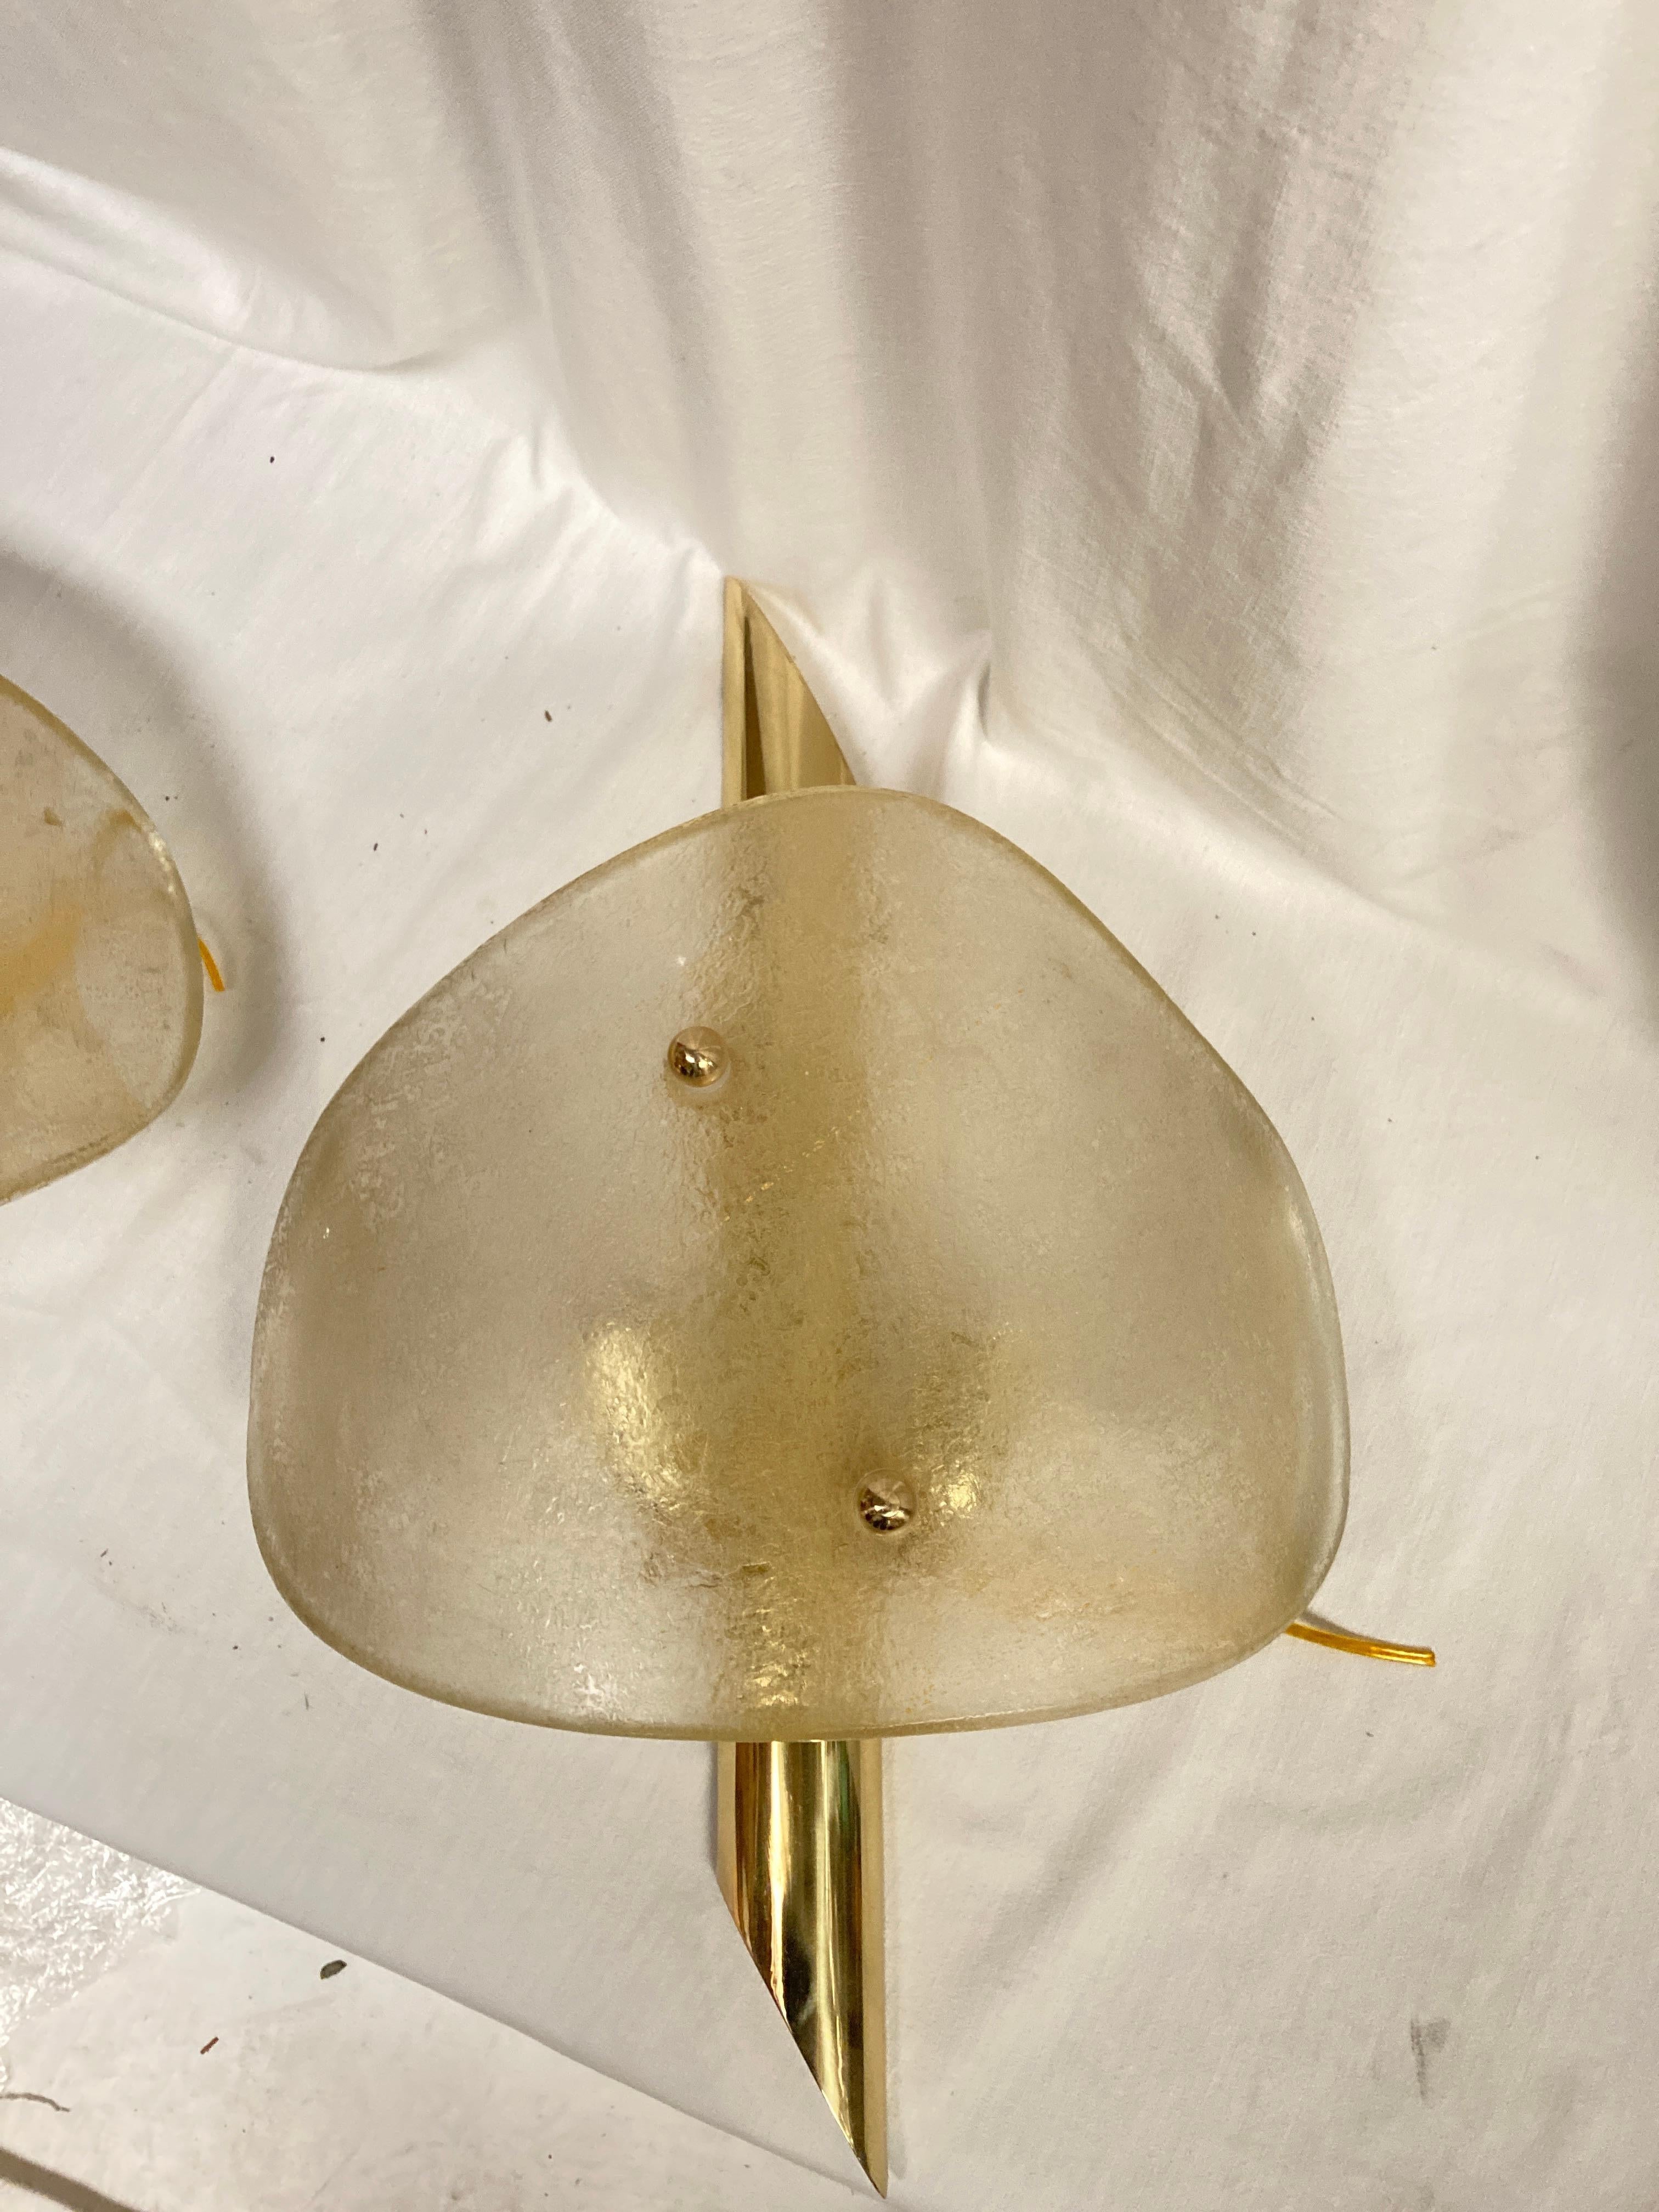 Rare paire d'appliques en verre de Murano 
Abat-jour en verre Murano doré à l'acide
Fixation en laiton poli
Excellent état